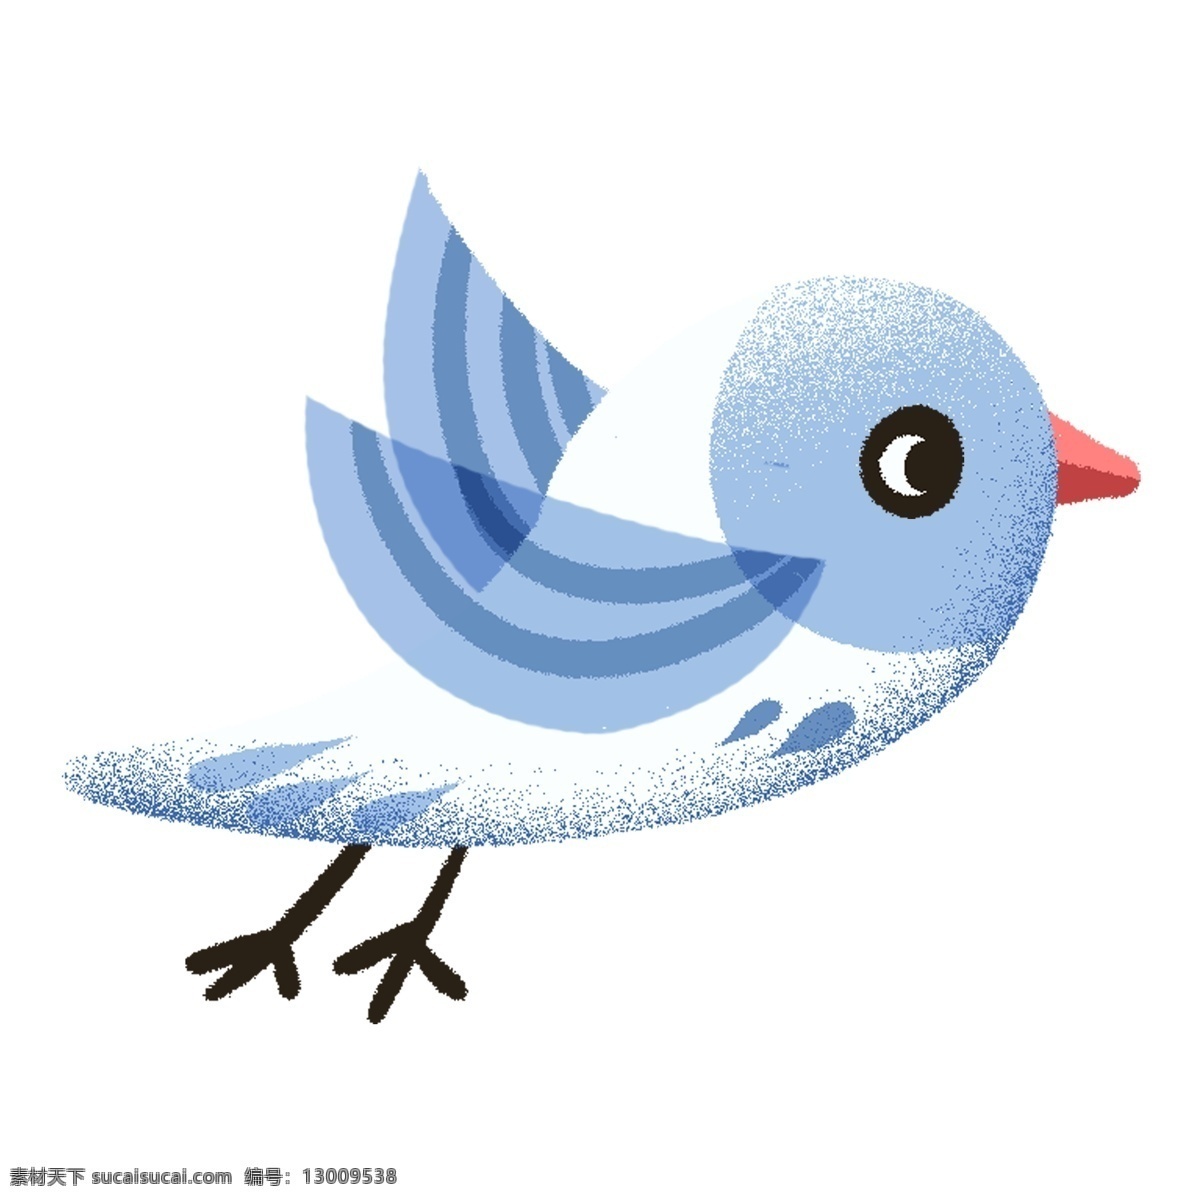 可爱 小鸟 插画 图案 蓝色 绘画 插画元素 设计元素 卡通 彩色 简约 小清新 精致